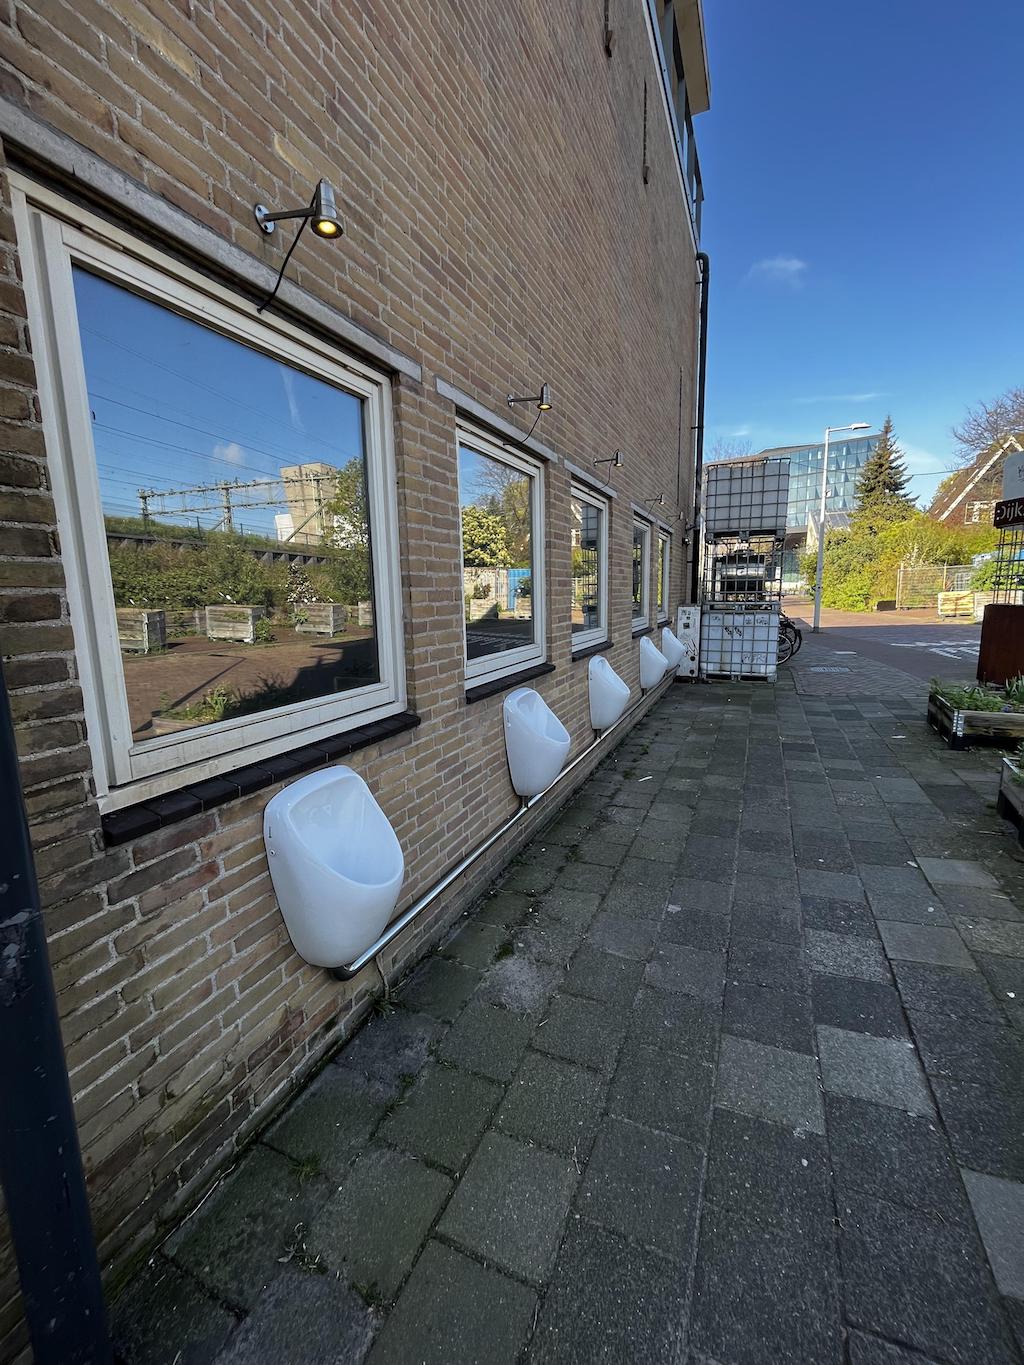 Ámsterdam instala urinarios en plena calle para convertir la orina en abono